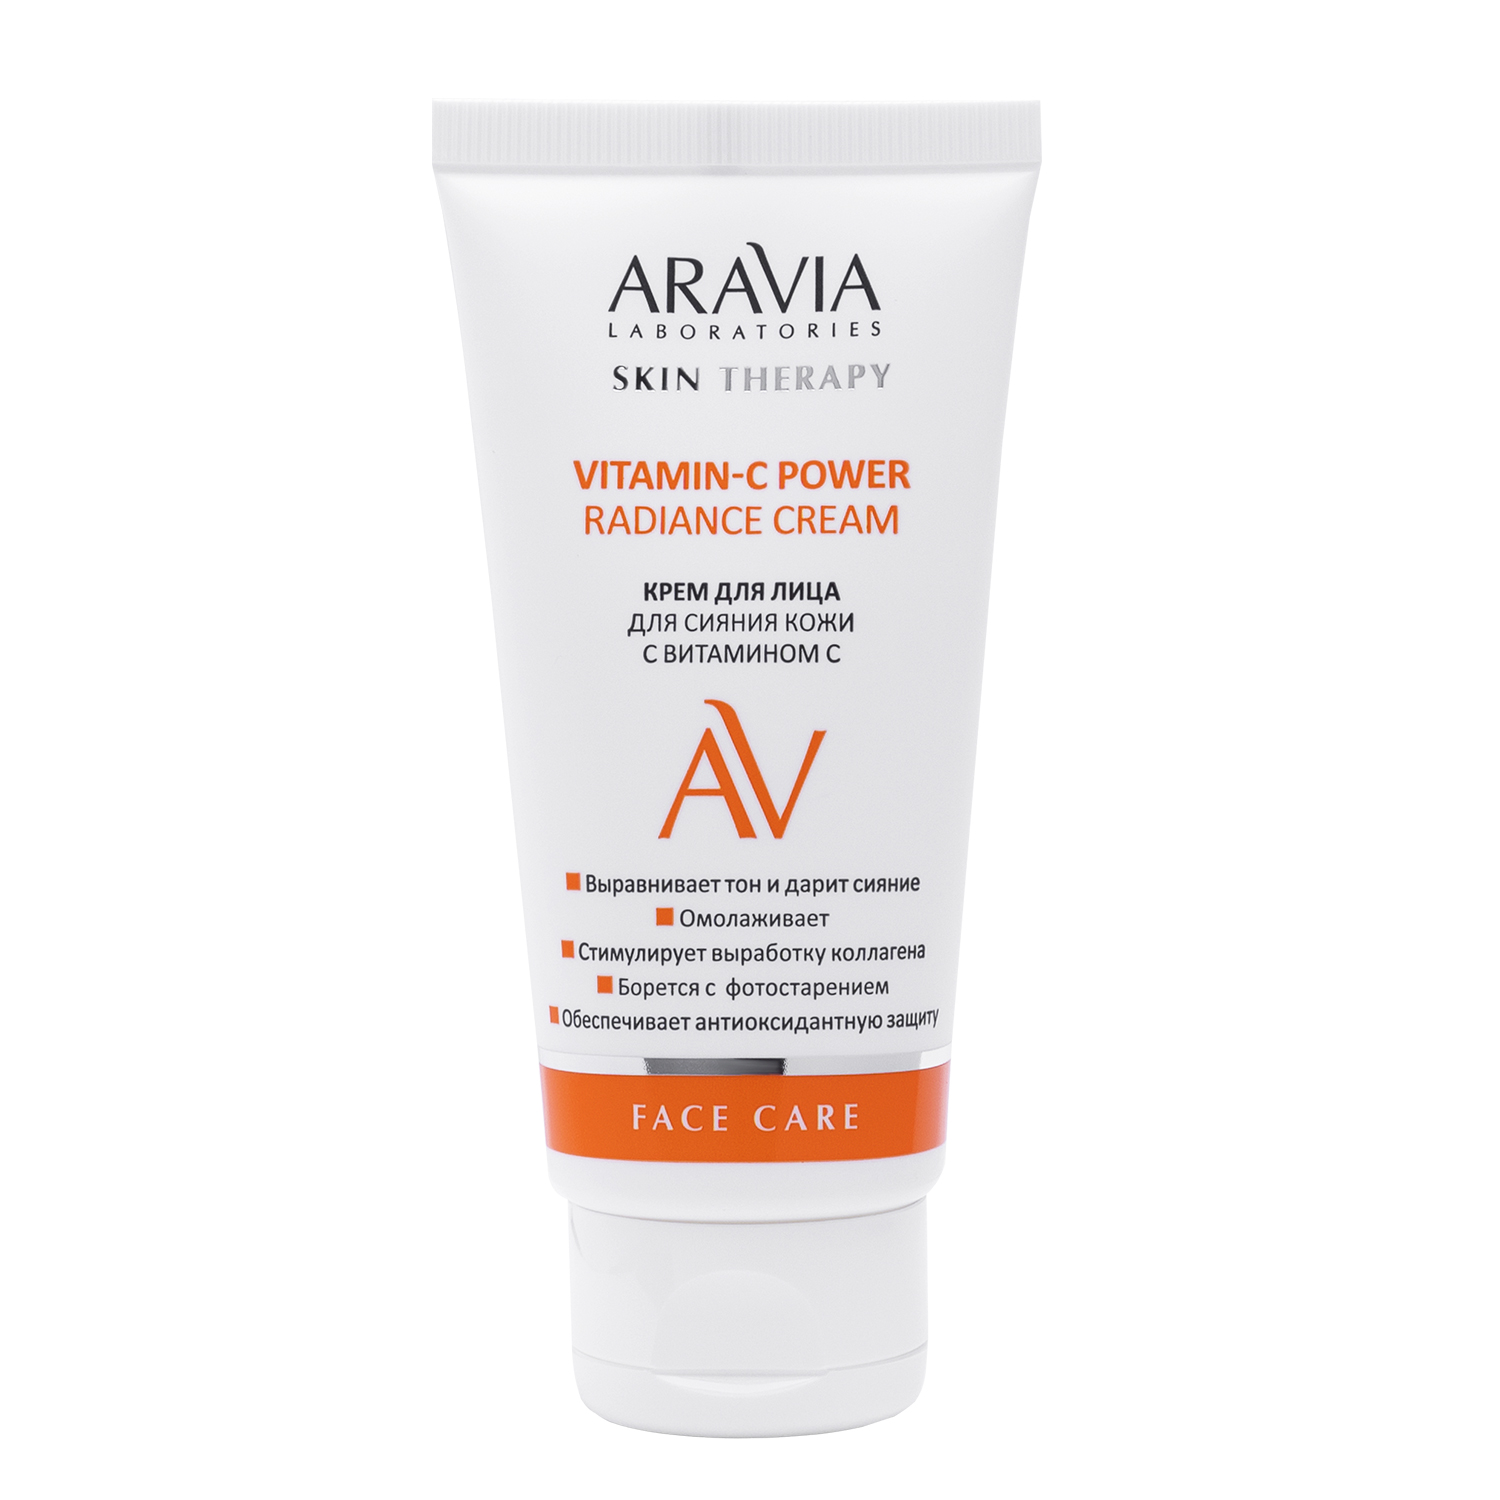 Крем Aravia Laboratories для лица сияние кожи 50 мл крем для лица bio g gentle восстанавливающий для чувствительной кожи 50 г